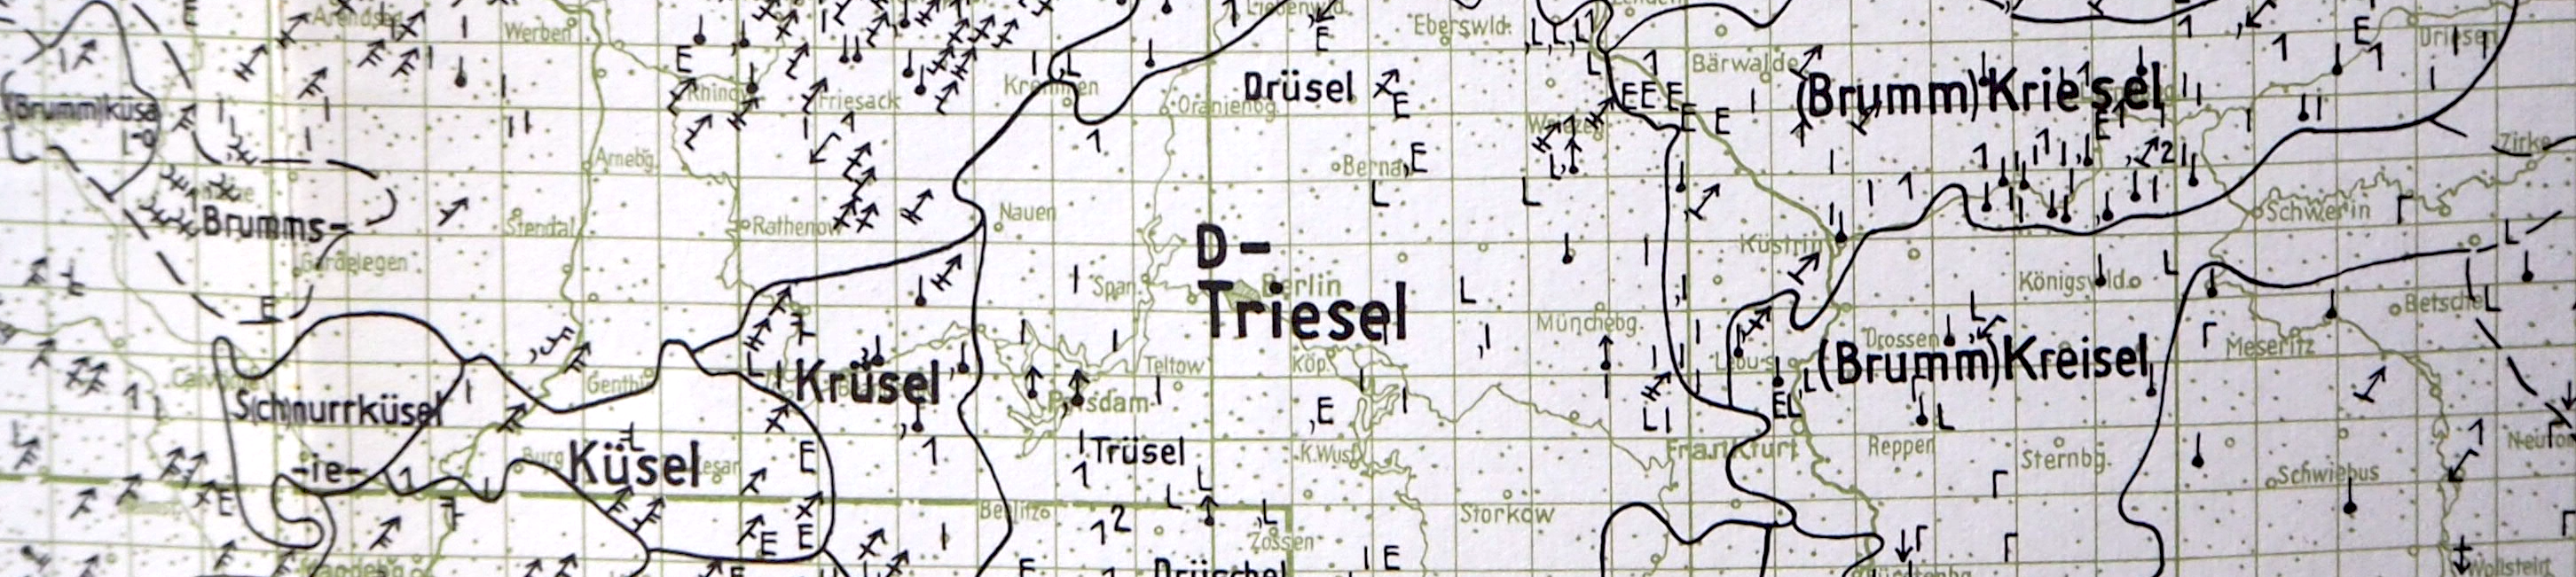 Ausschnitt aus der Landkarte des Deutschen Wortatlas zur Verbreitung der verschiedenen Bezeichnungen für den Kreisel